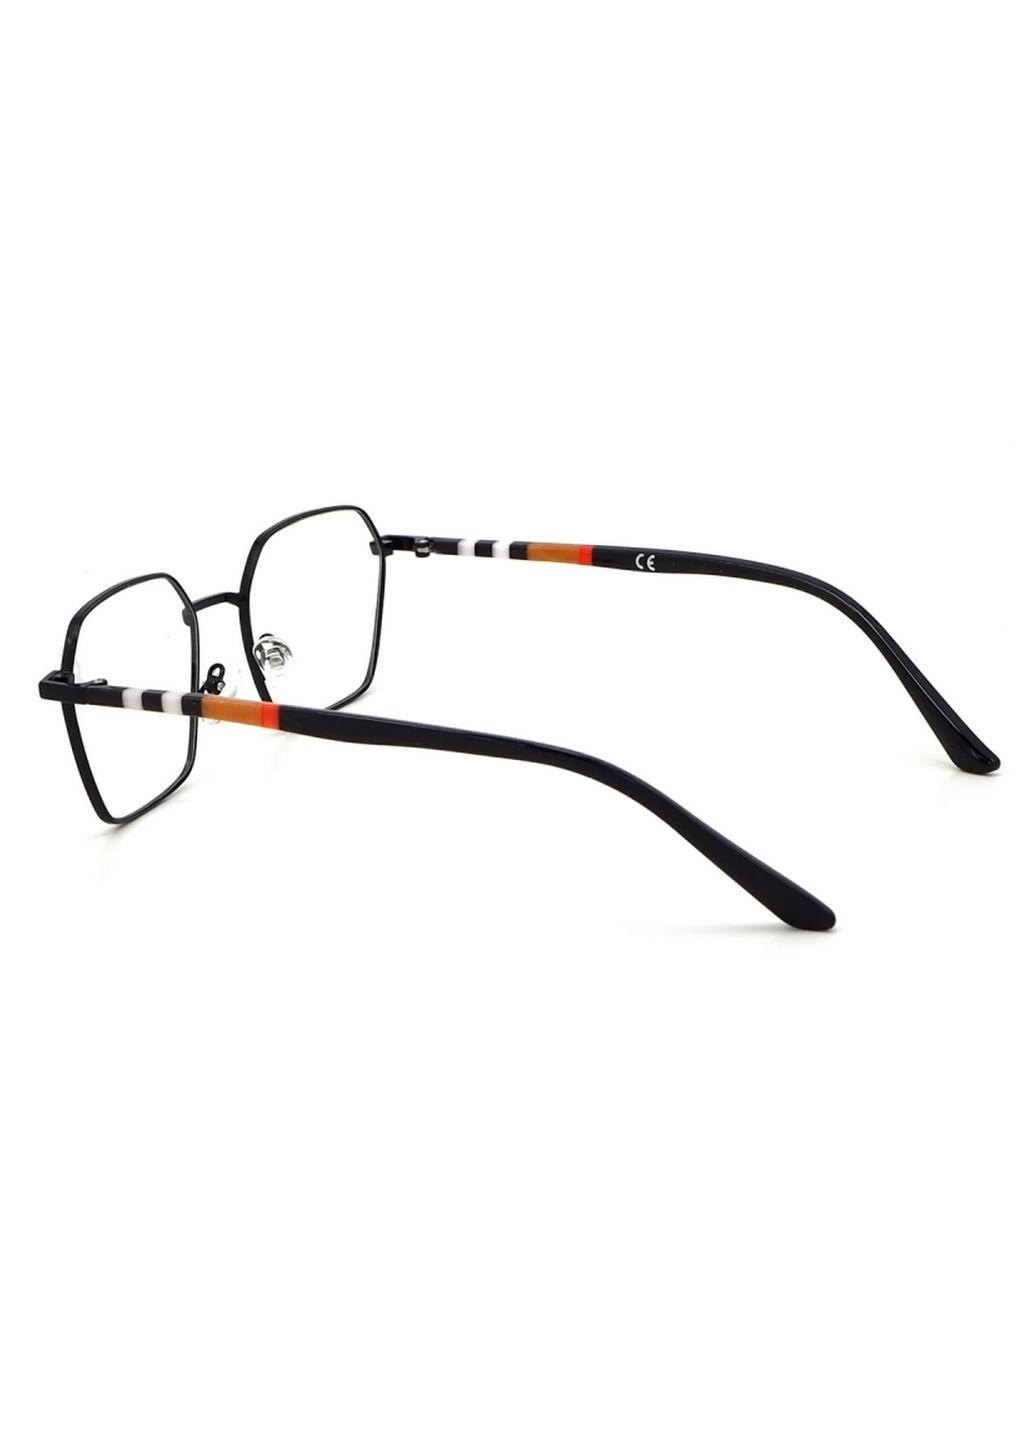 Купить Очки для работы за компьютером Cooper Glasses в черной оправе 124017 в интернет-магазине